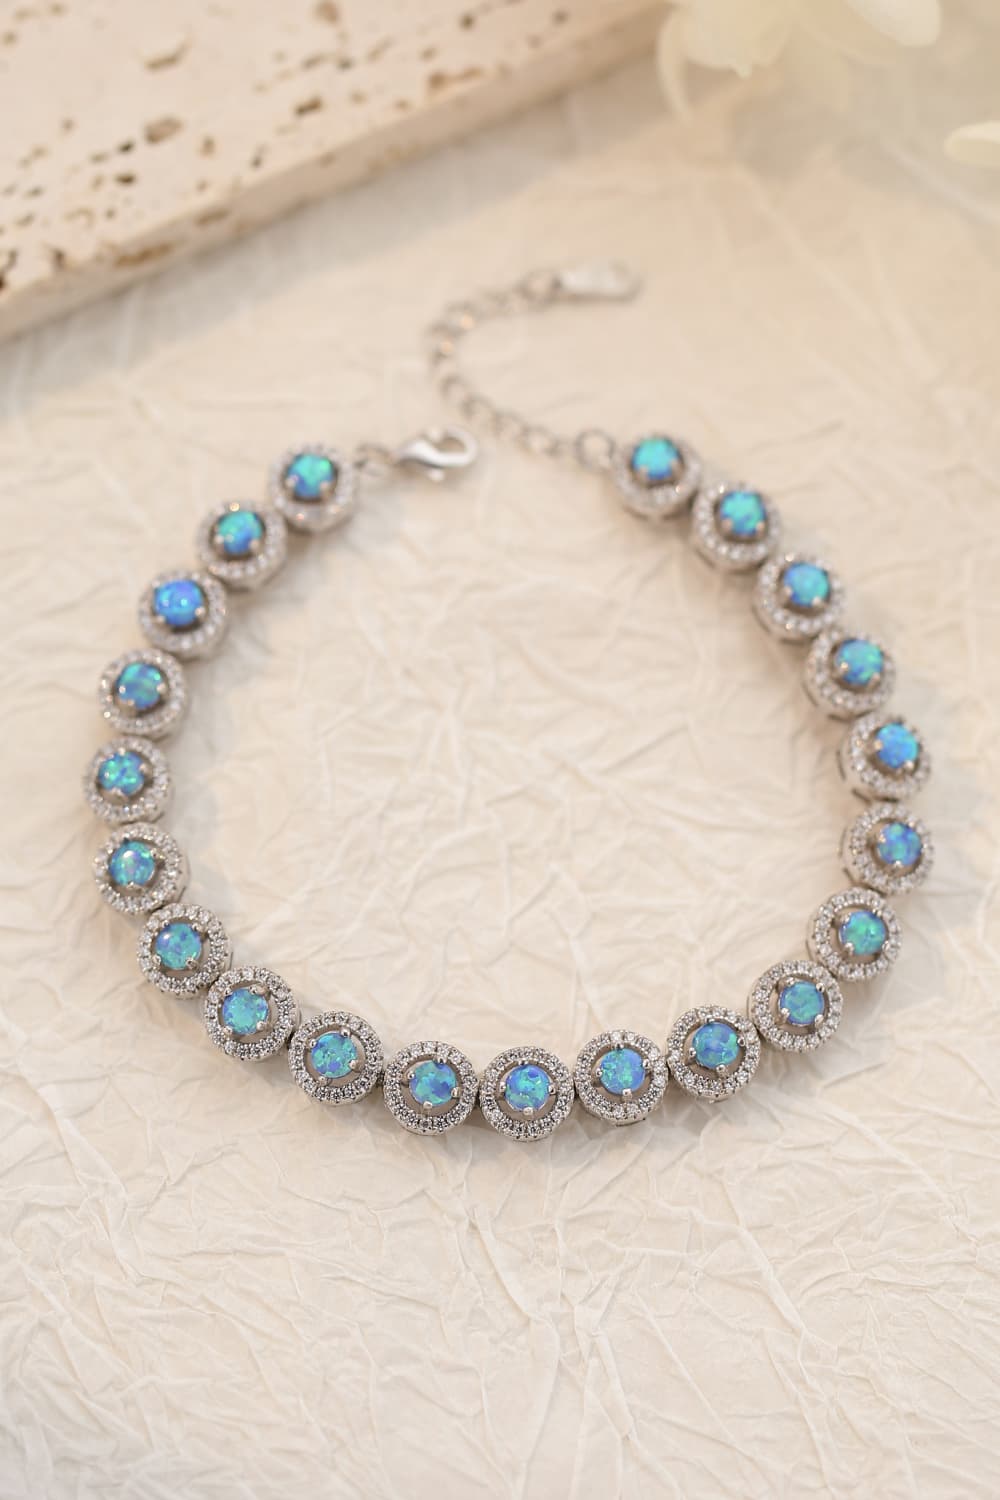 My Own Way Opal Bracelet - Women’s Jewelry - Bracelets - 3 - 2024